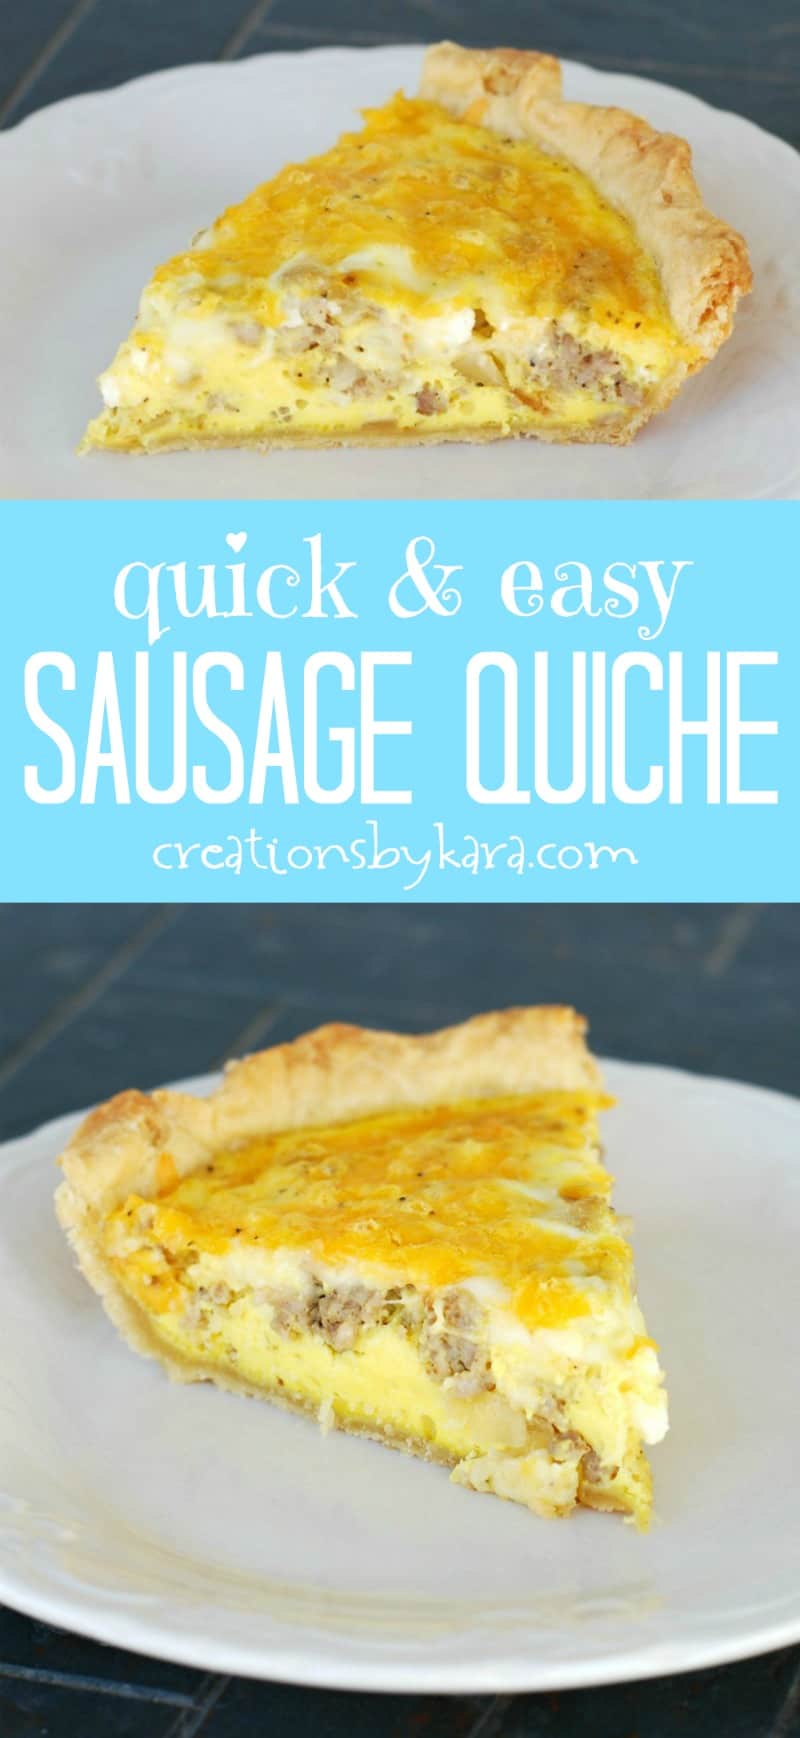 Easy sausage quiche recipe